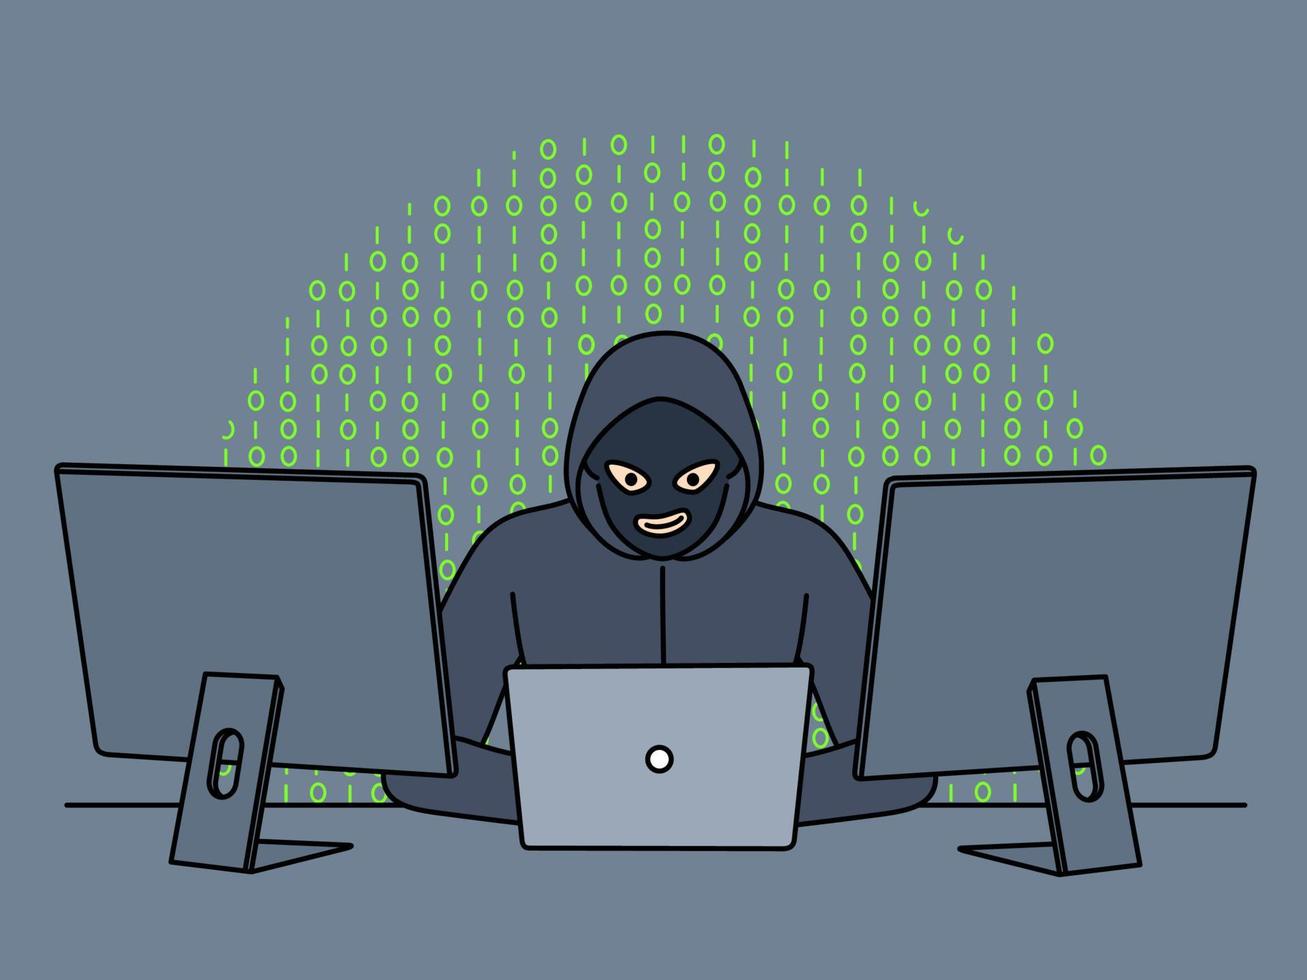 maschio pirata nel felpa con cappuccio e maschera sedersi a tavolo opera su computer rubare personale informazione. anonimo penale mod programmi e siti web su pc. vettore illustrazione.